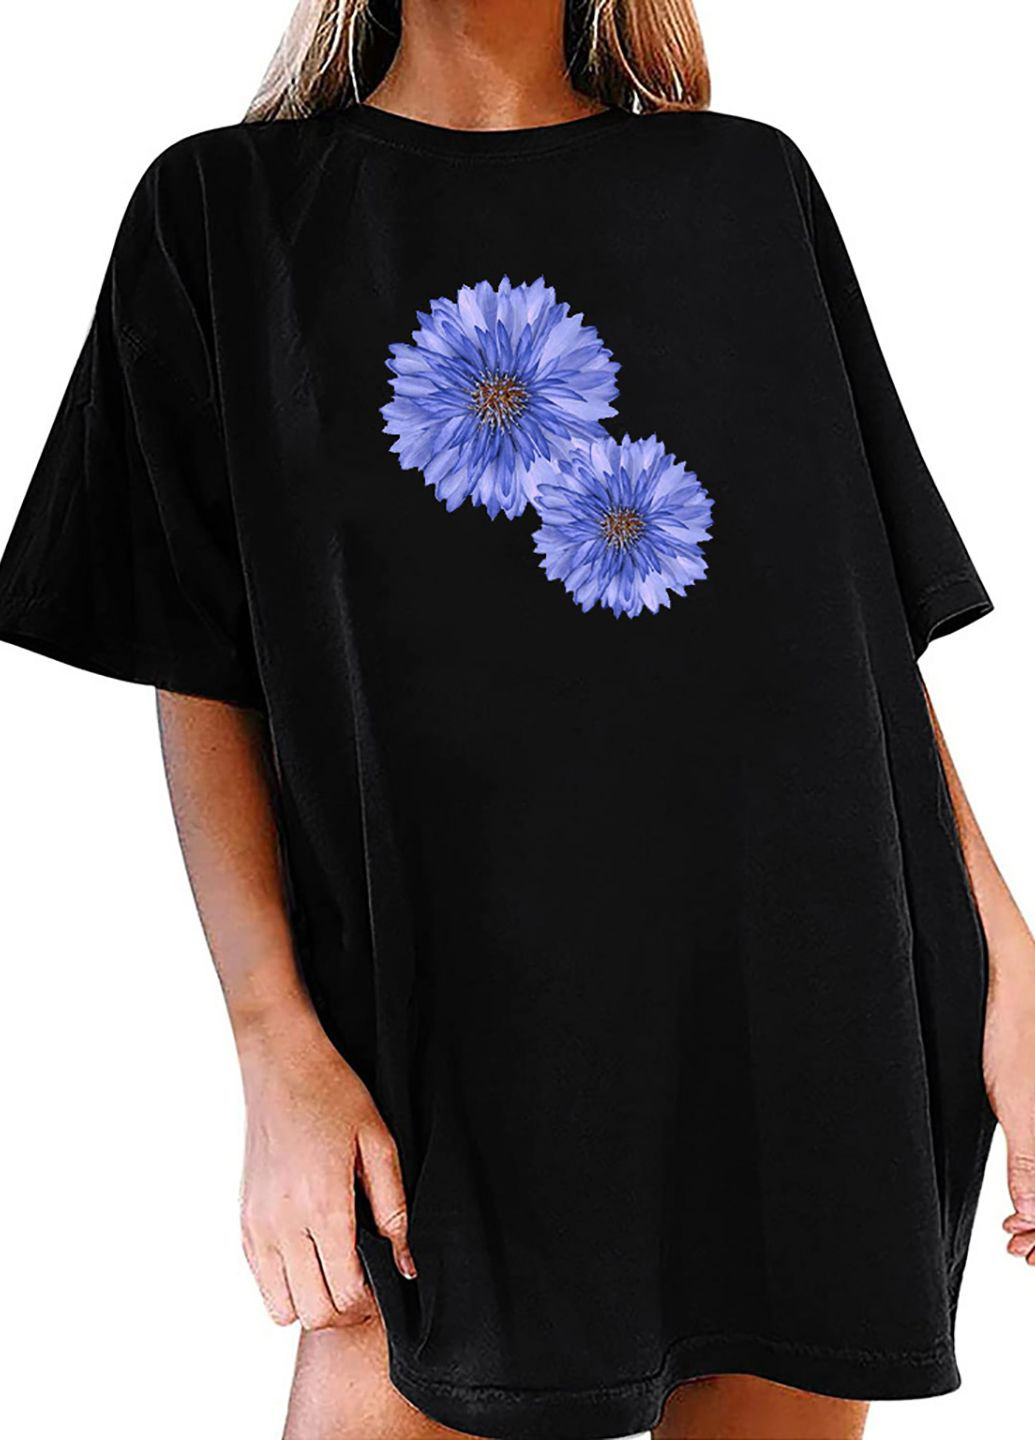 Черное платье-футболка черное с удлиненным рукавом chintz floral Love&Live с рисунком